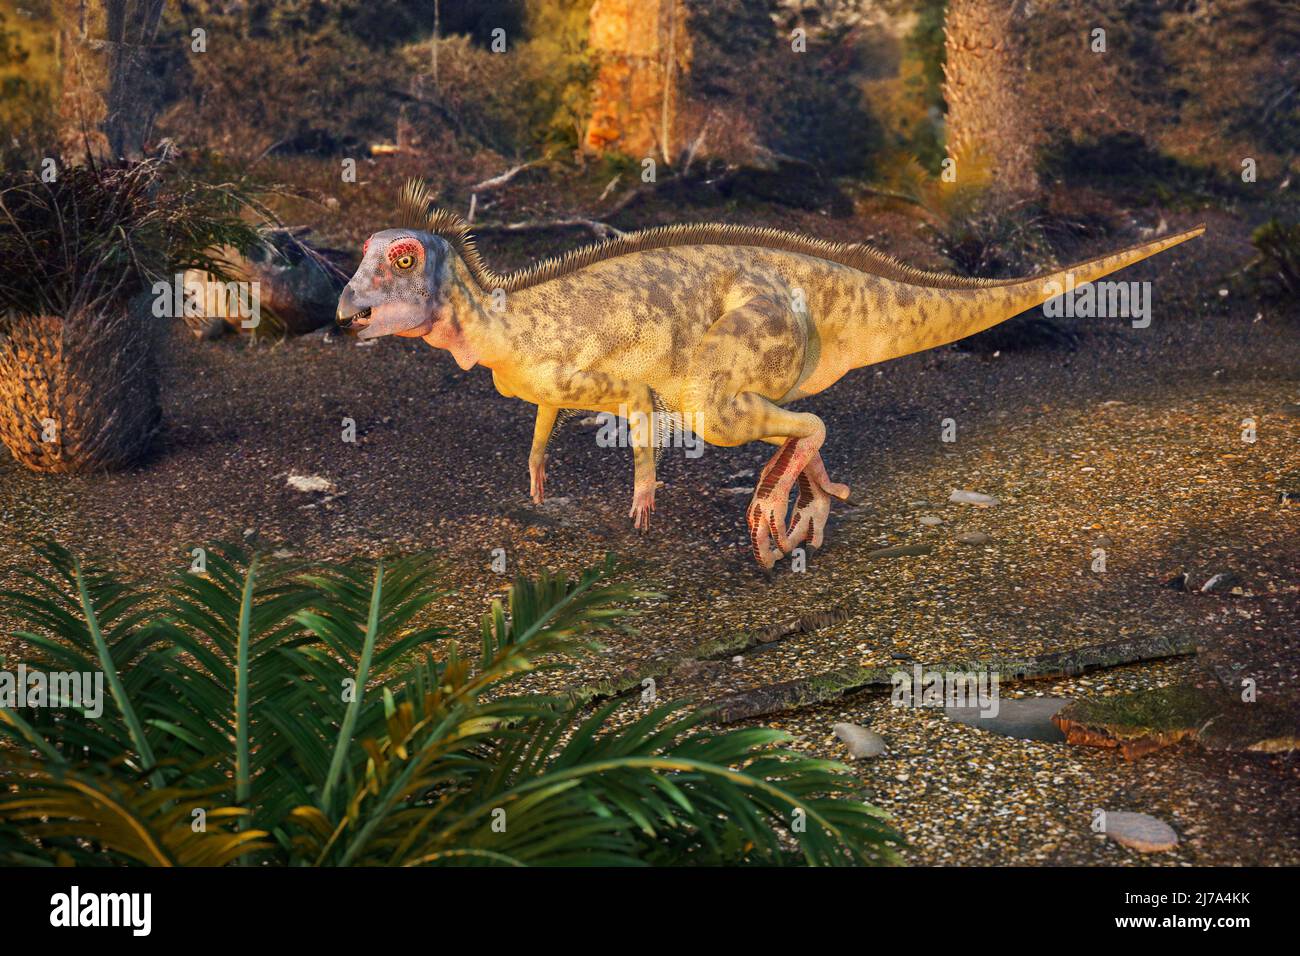 Hypsilophodon dinosaur, illustration Stock Photo